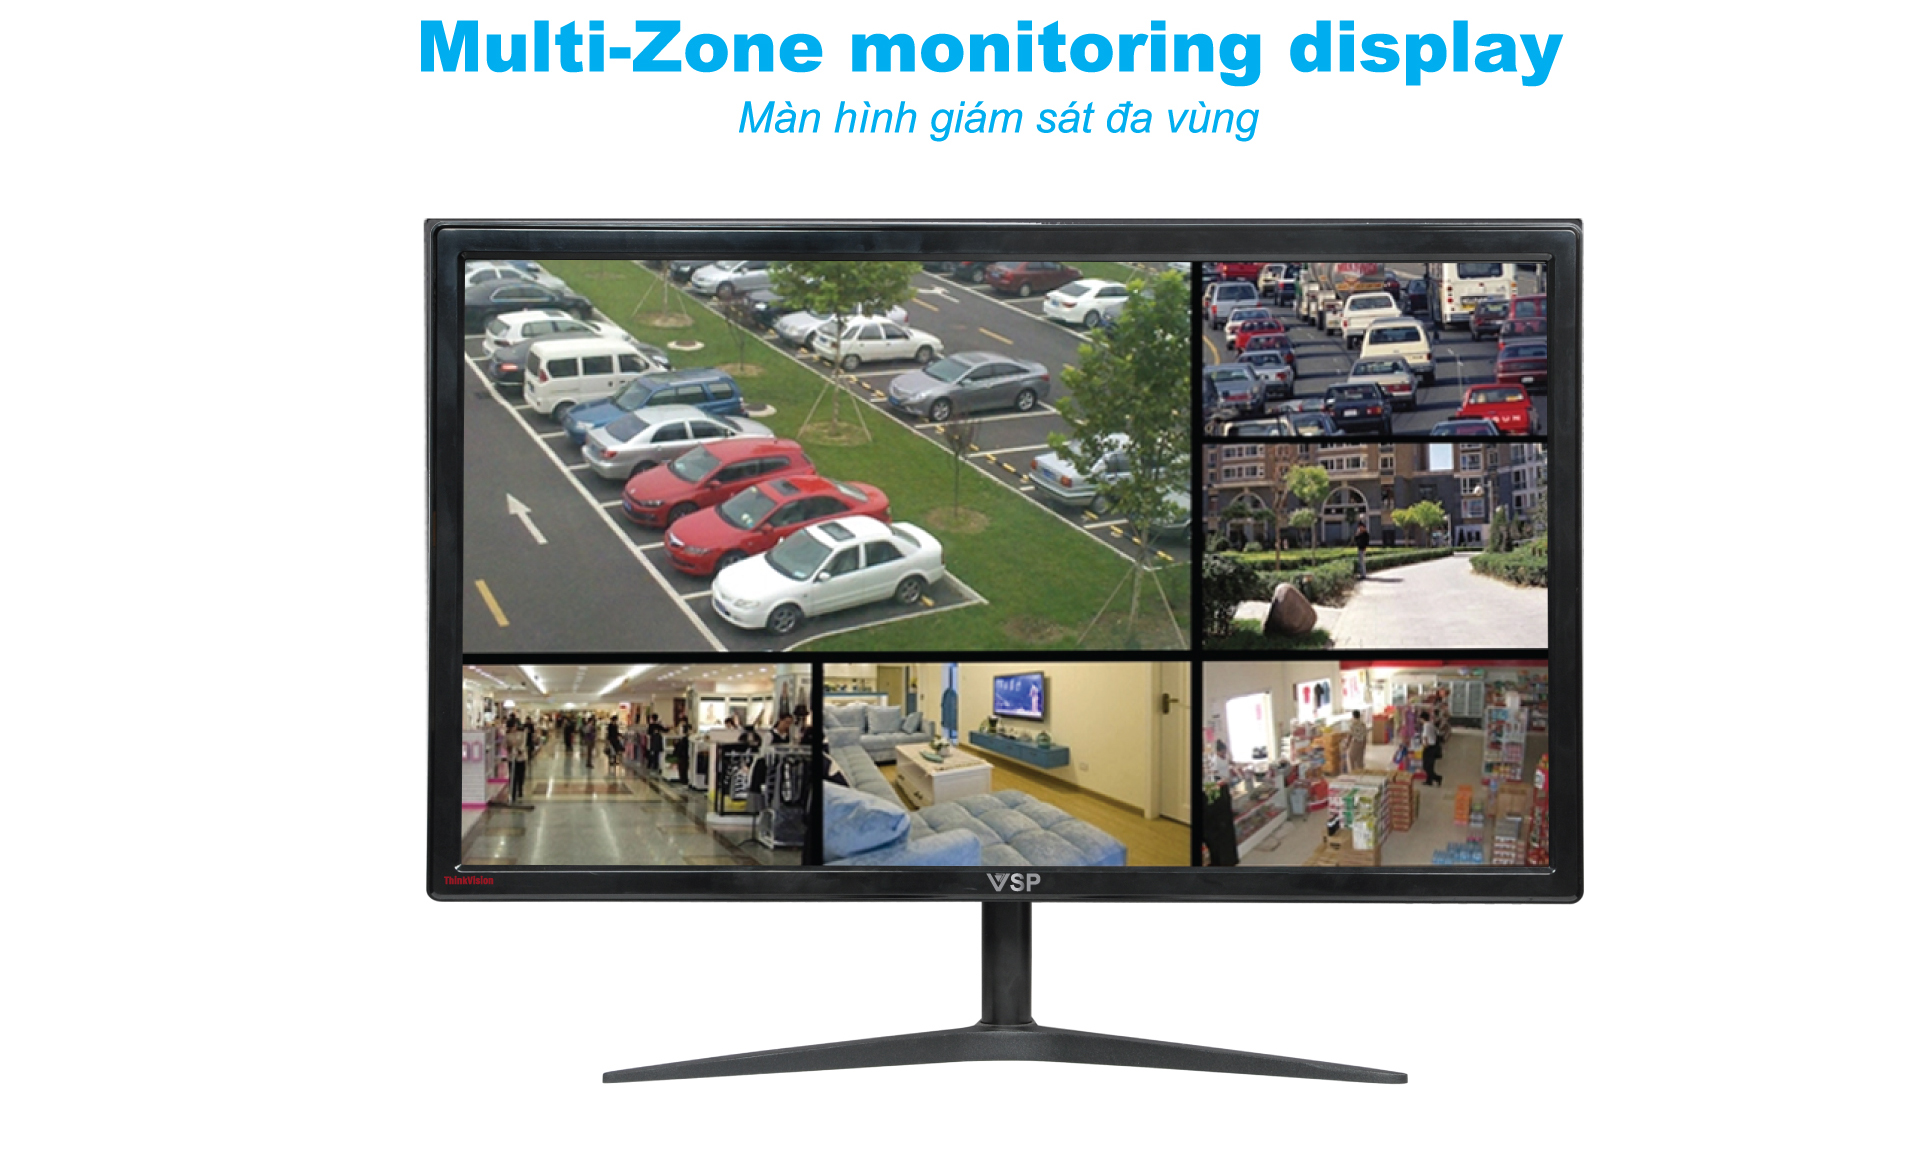 HD LCD VSP monitor 22 inch VL22(LC2201)